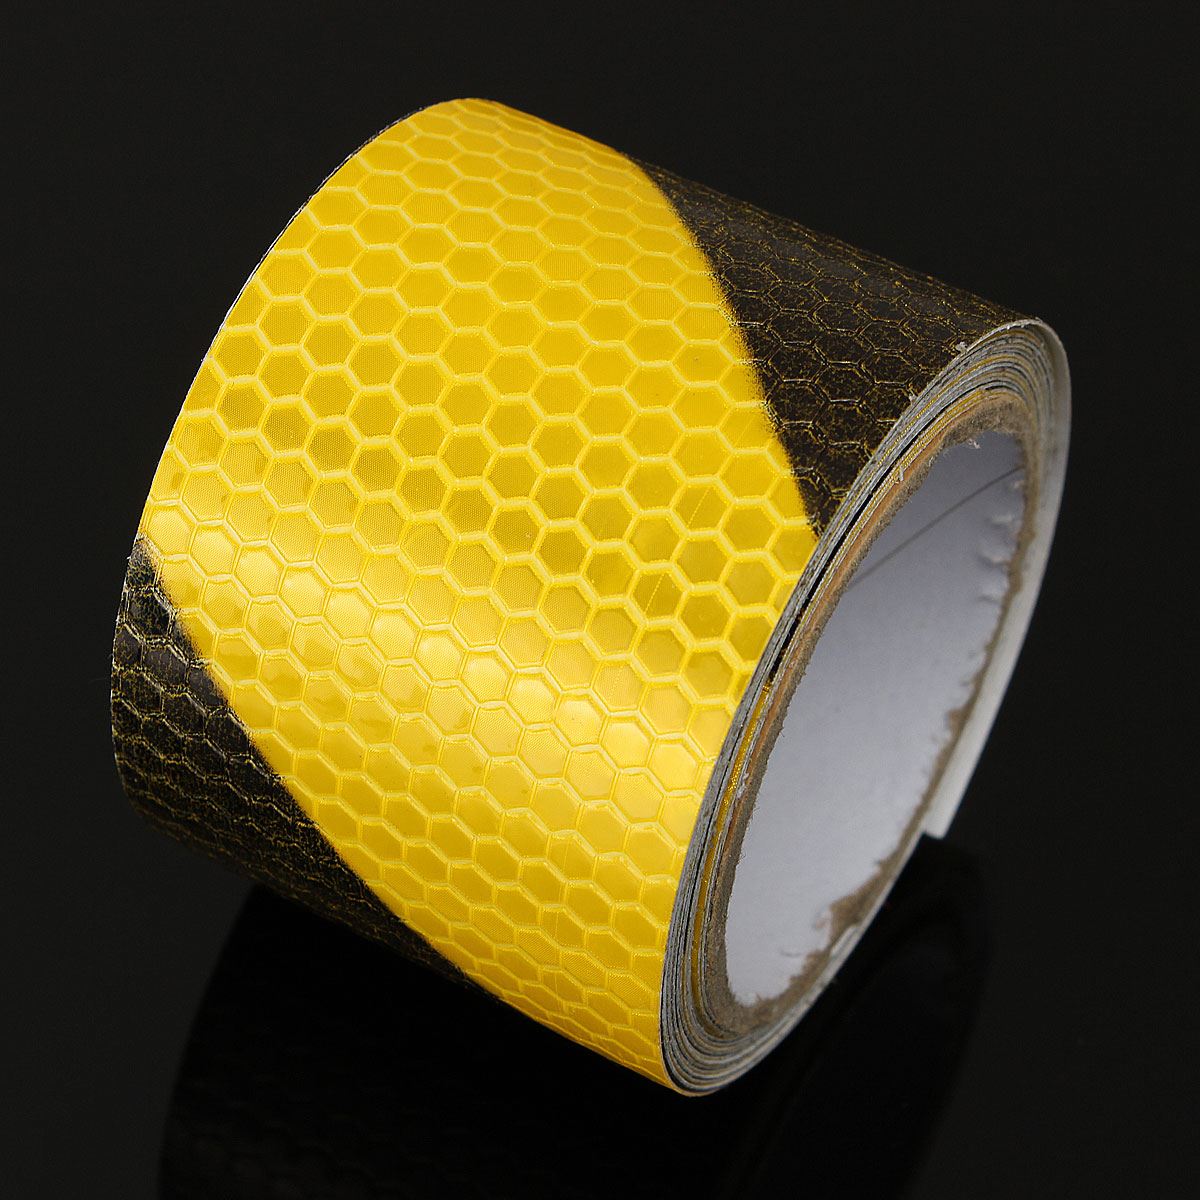 Sort gul reflekterende sikkerhedsadvarsel iøjnefaldende tape film klistermærke 300cm x 5cm arbejdsplads sikkerhedsforsyninger advarselsbånd